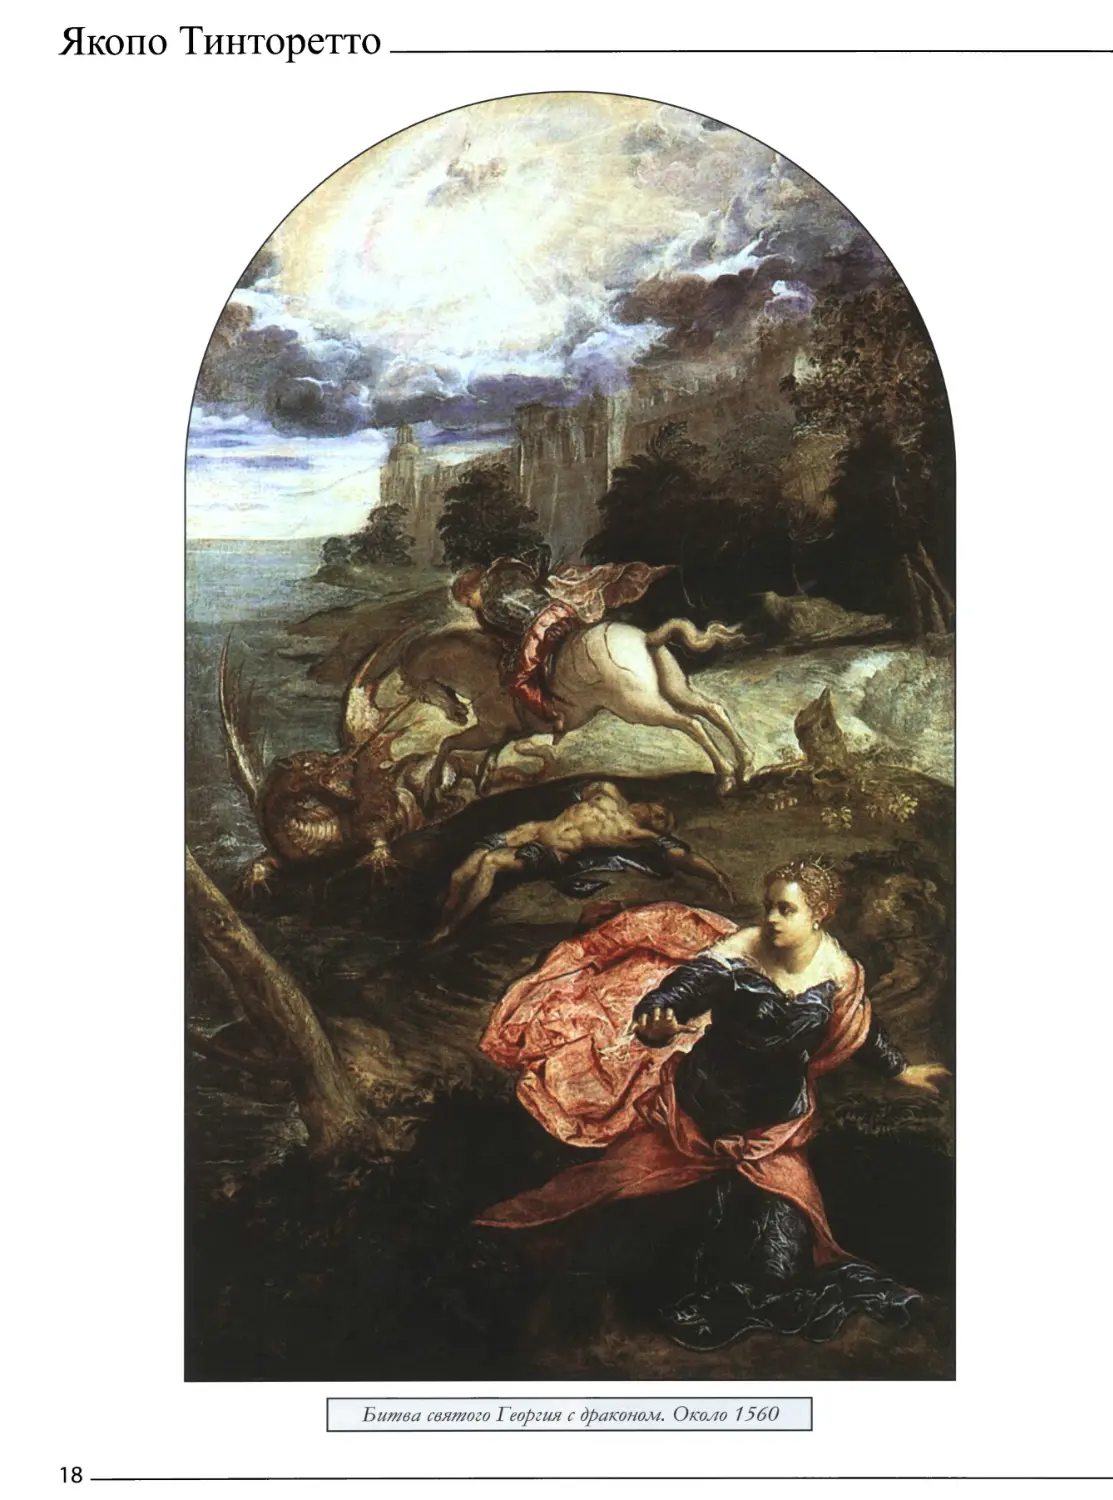 Битва святого Георгия с драконом. Около 1560